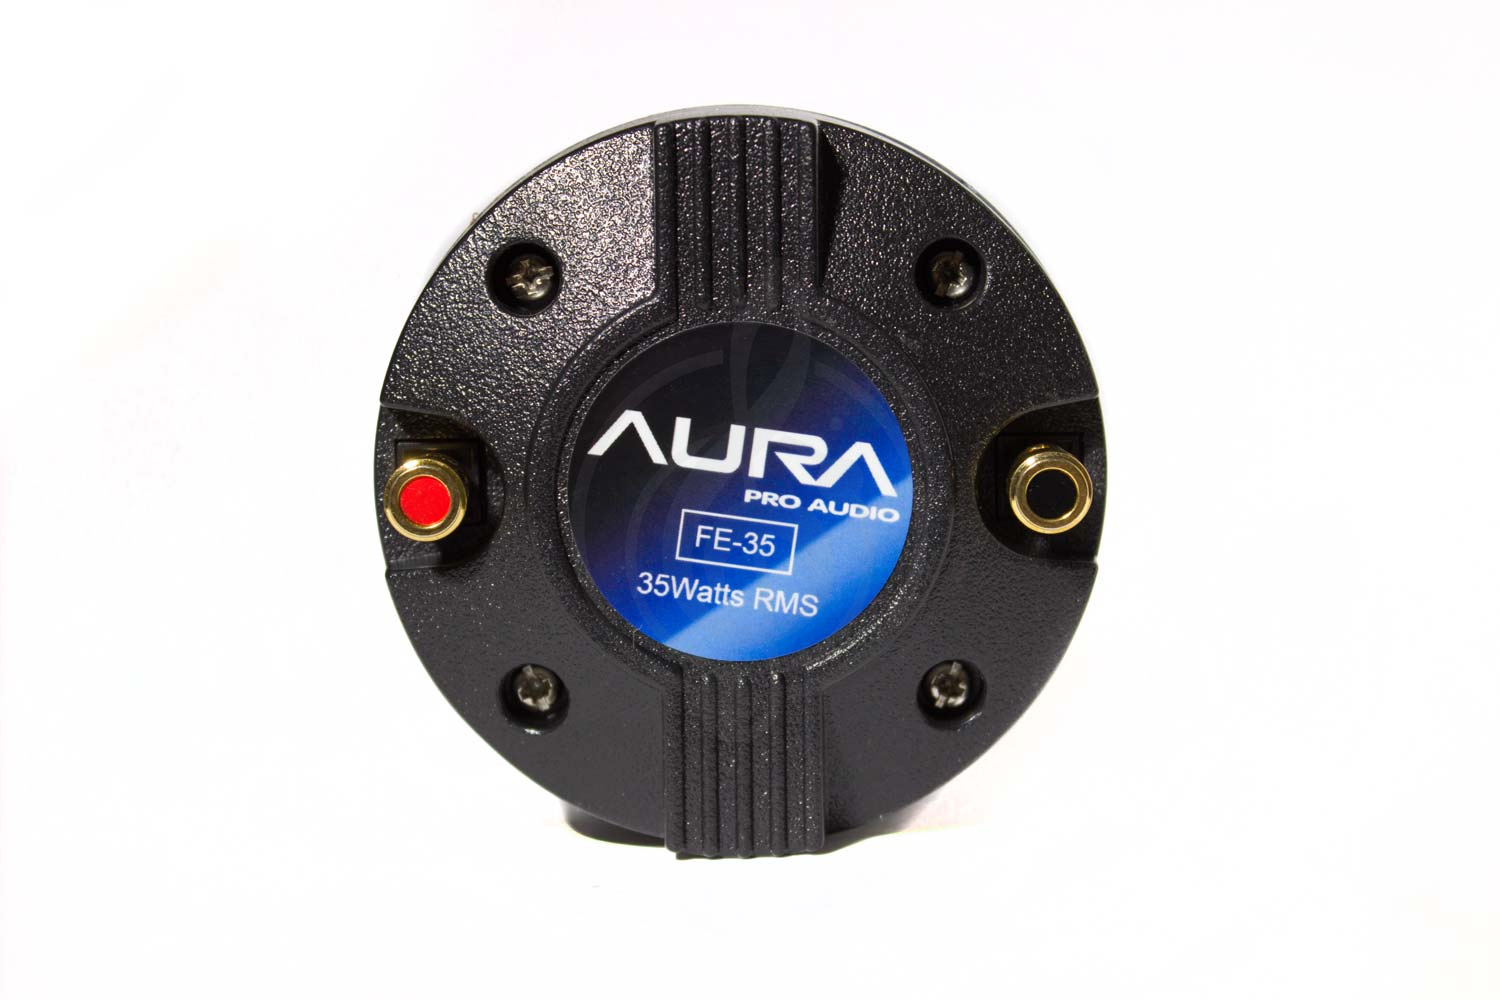  ВЧ драйверы Aura Aura FE35 - Драйвер для акустической системы Aura FE35 - фото 2